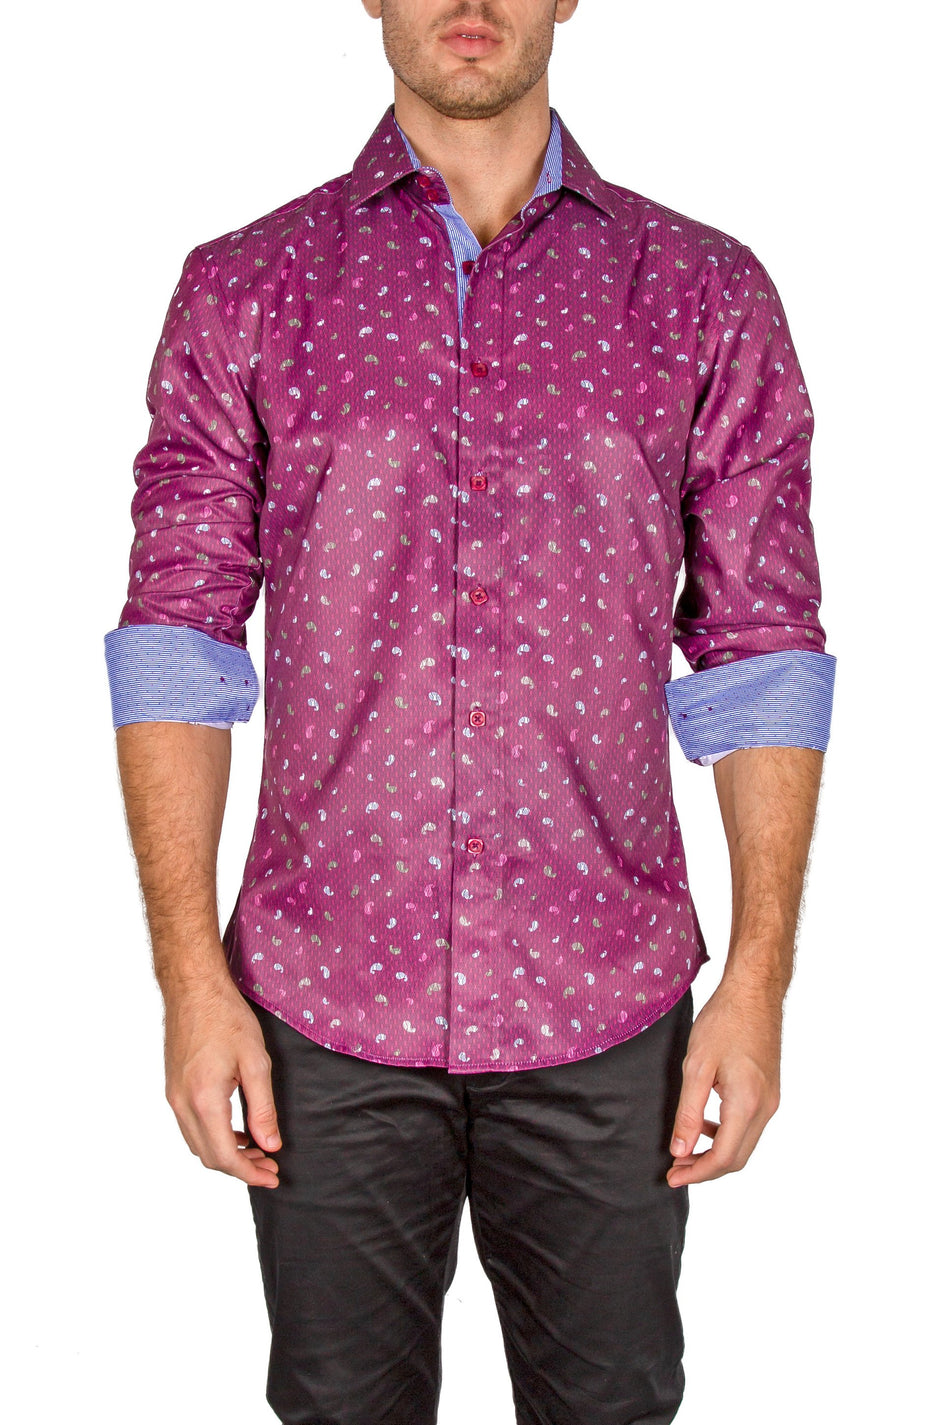 182246-mens-burgundy-button-up-long-sleeve-dress-shirt